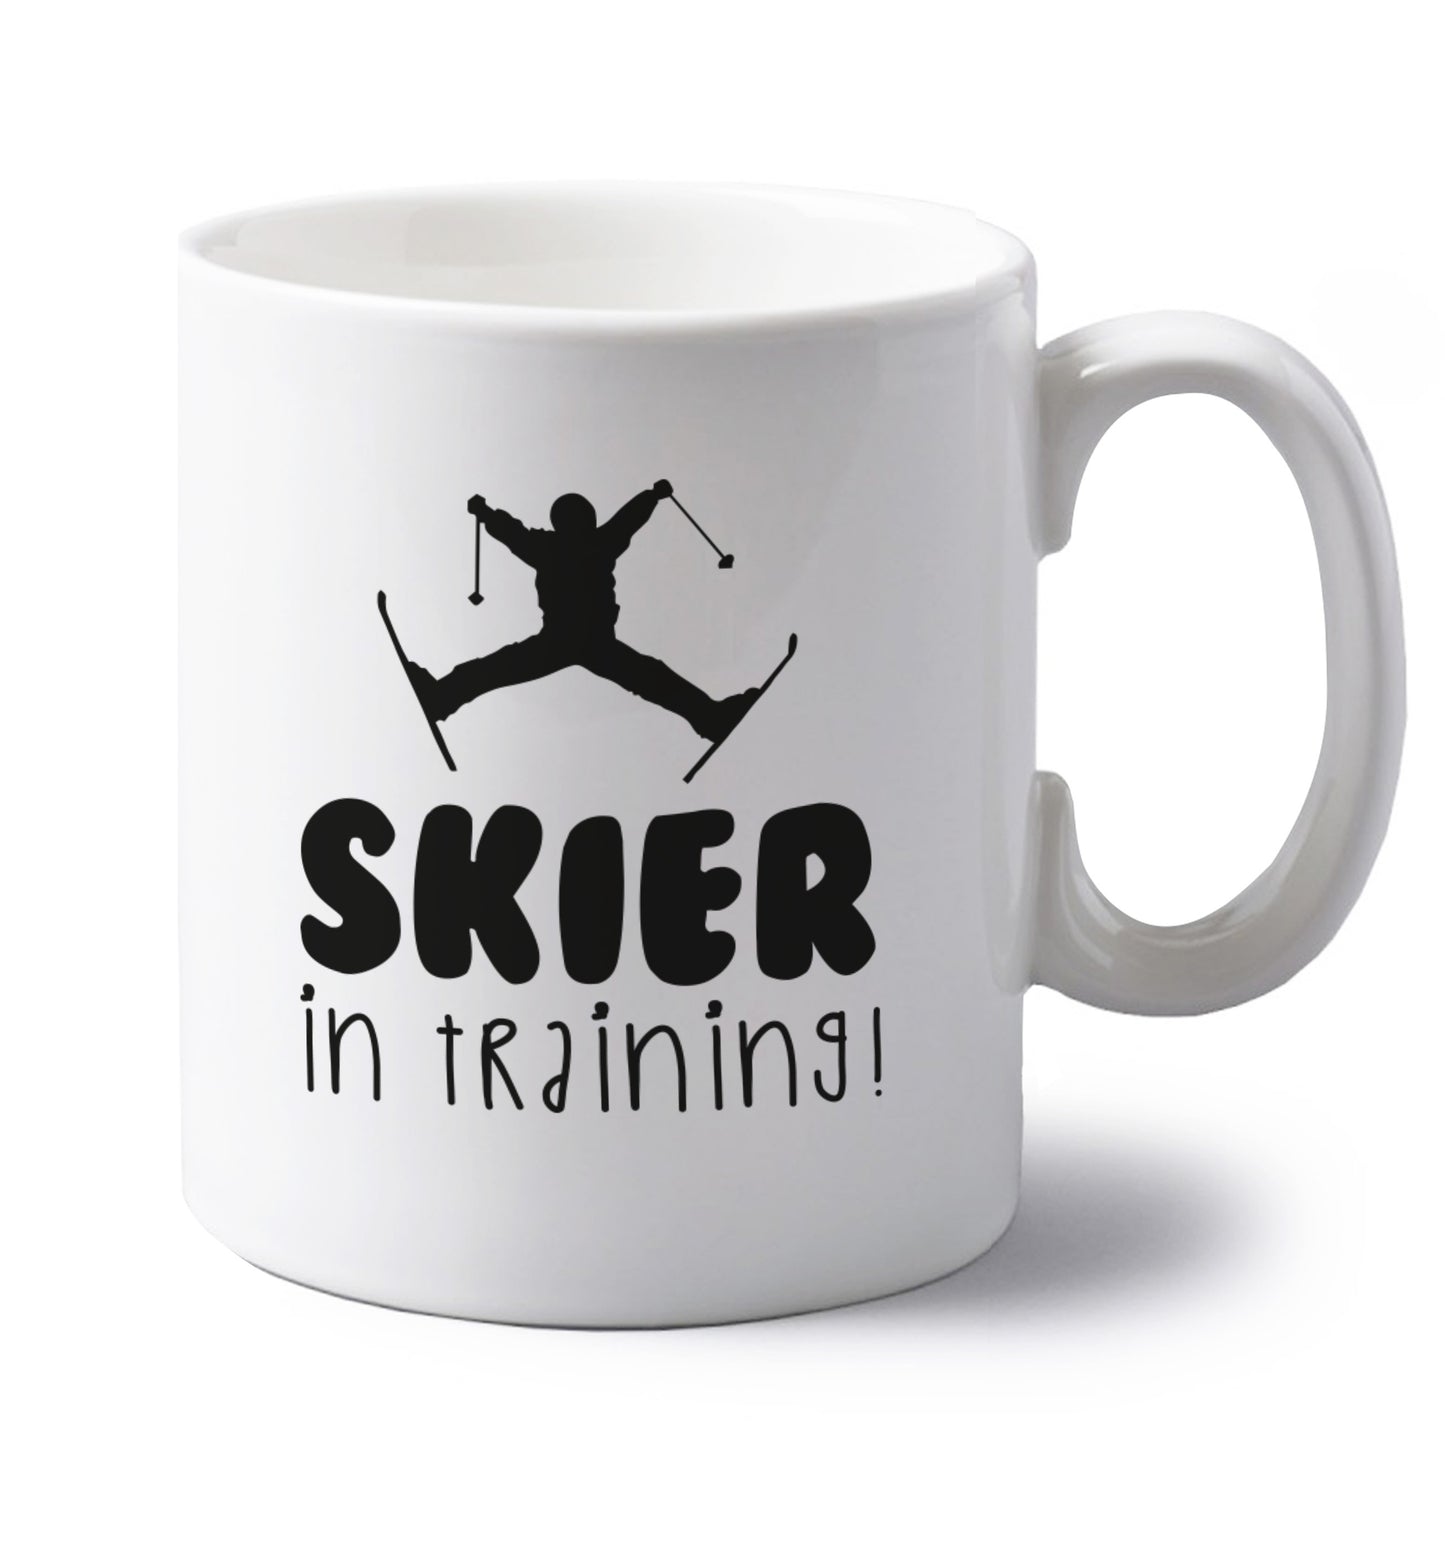 Skier in training left handed white ceramic mug 